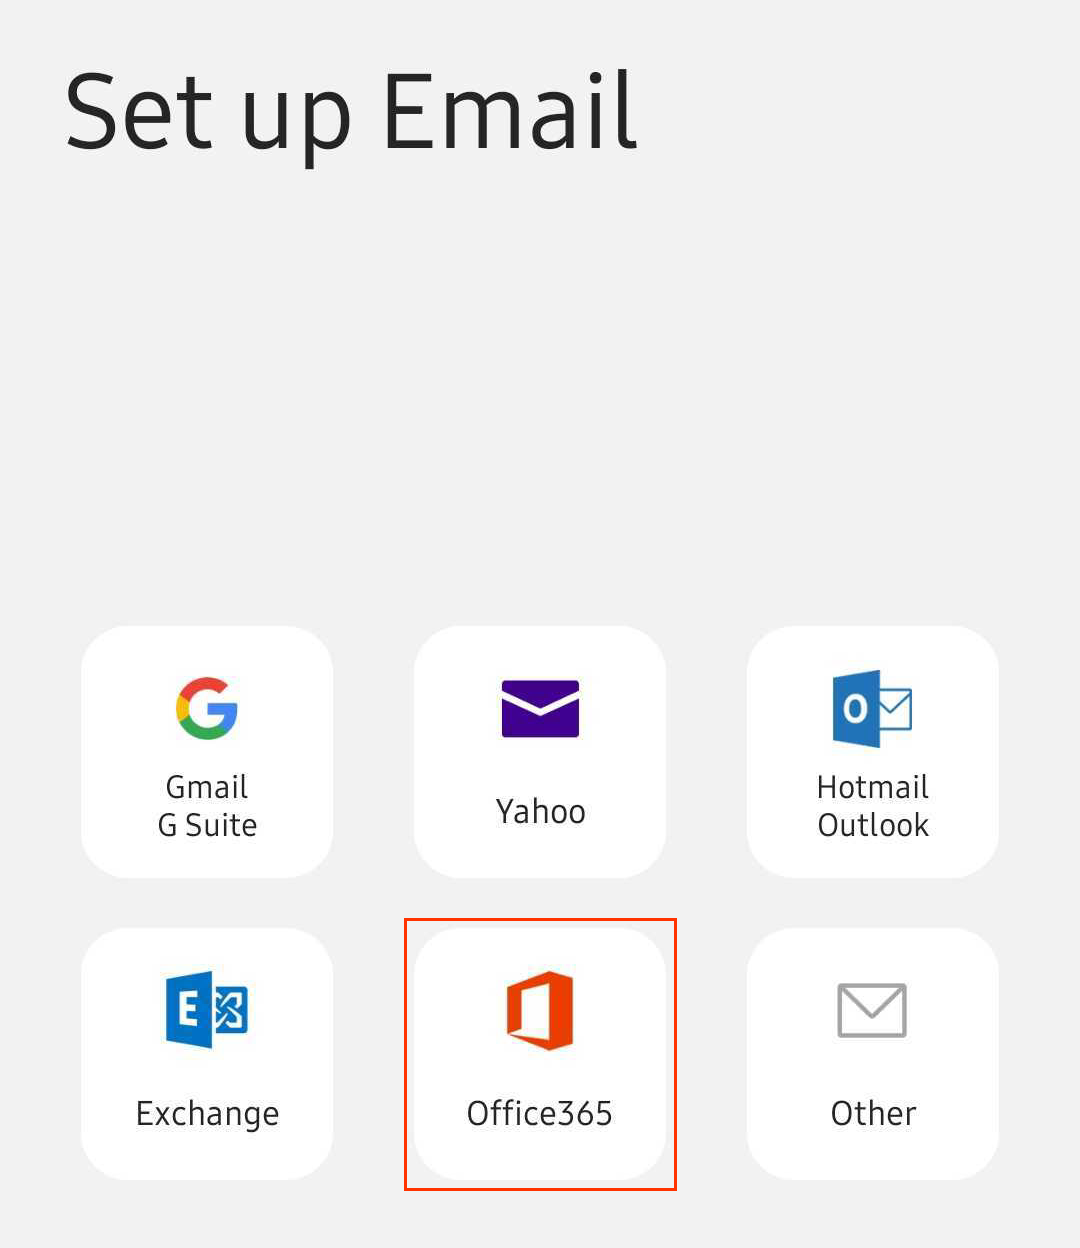 Bildschirm mit verschiedenen Optionen für E-Mail-Clients; Office 365 ist durch ein rotes Viereck hervorgehoben